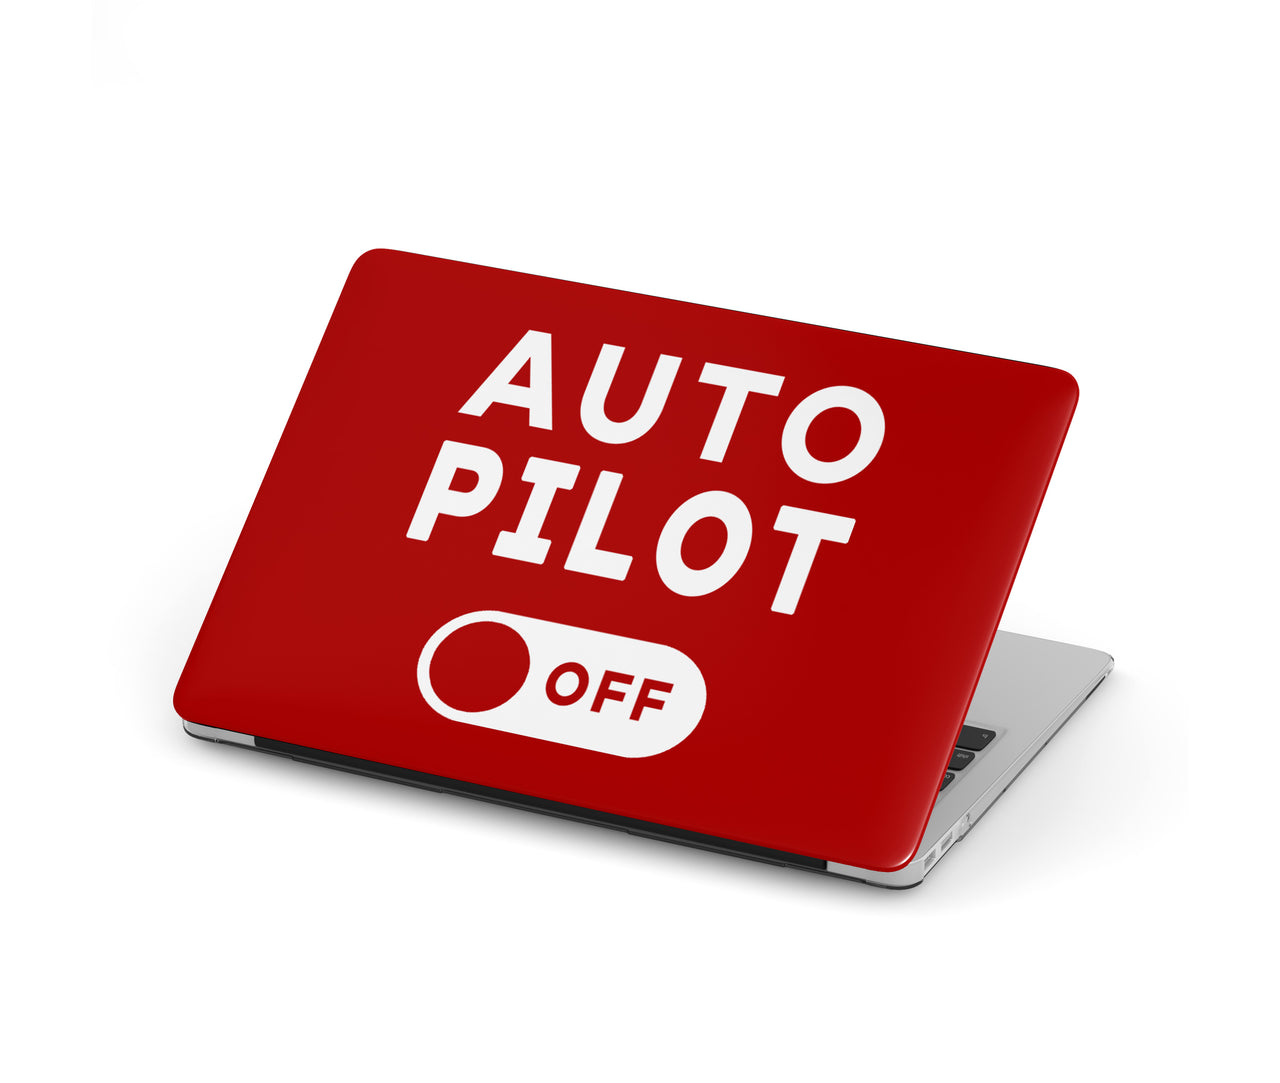 Auto Pilot Off Designed Macbook Cases